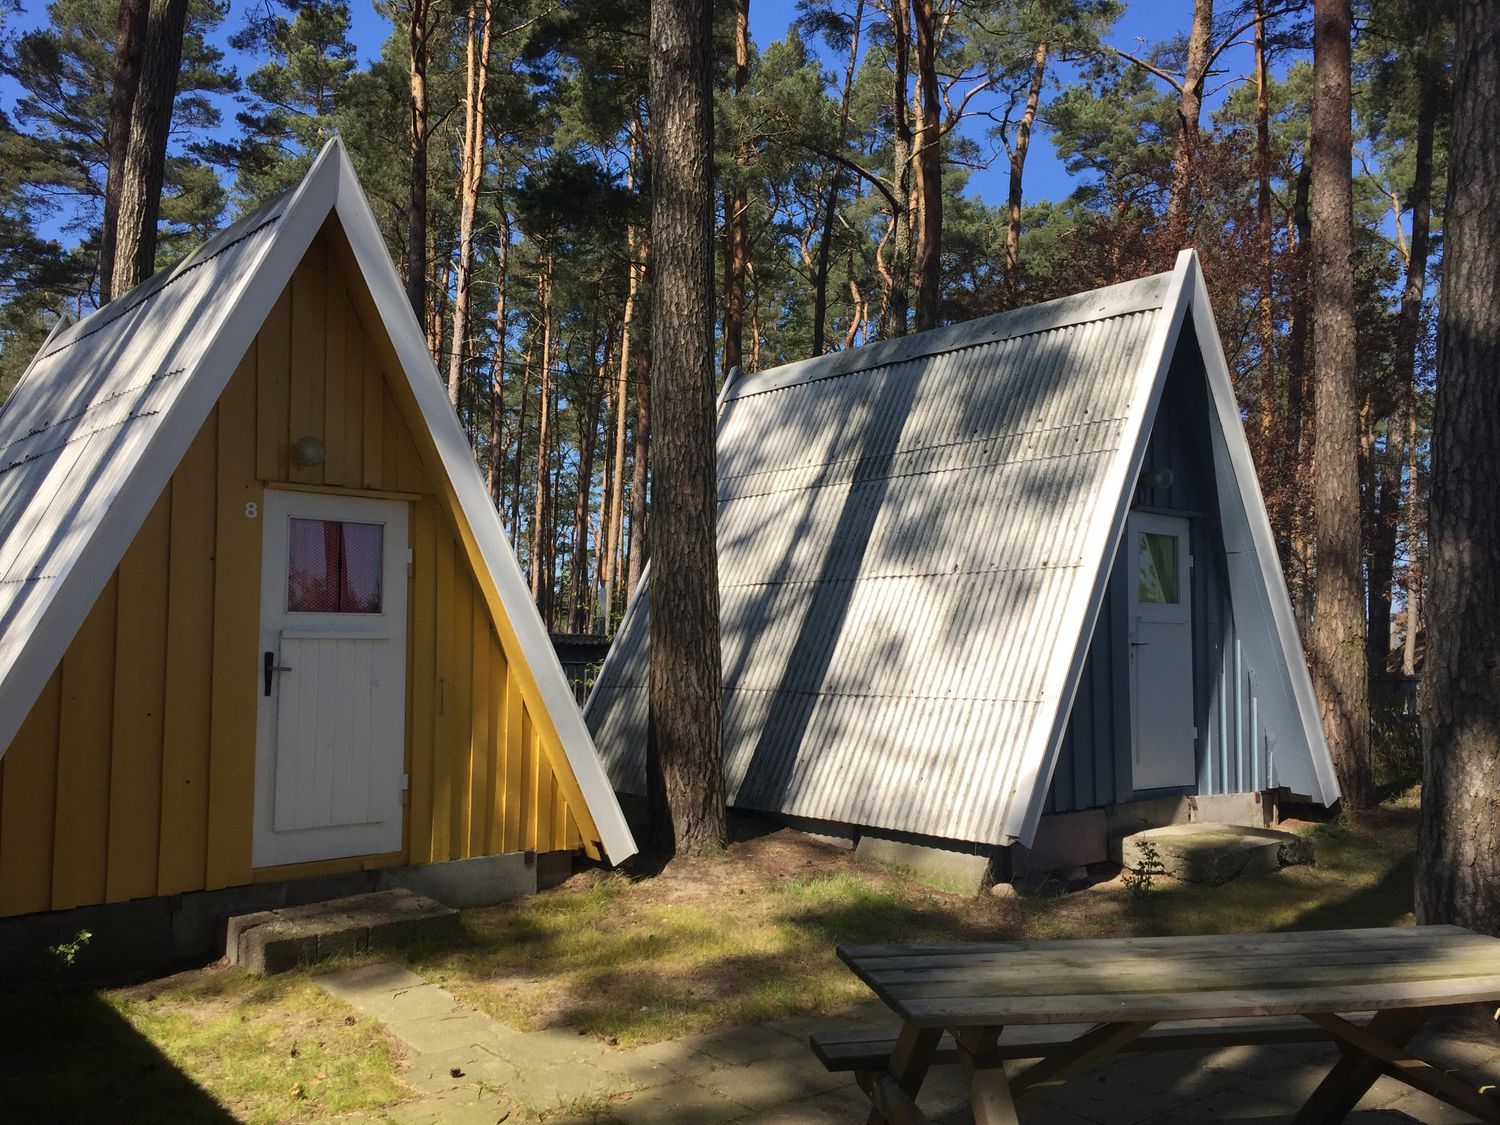 Unsere Finnhütten sind eine tolle Alternative für alle, die Urlaub auf dem Campingplatz lieben, aber weder Wohnwagen noch Zelt haben.